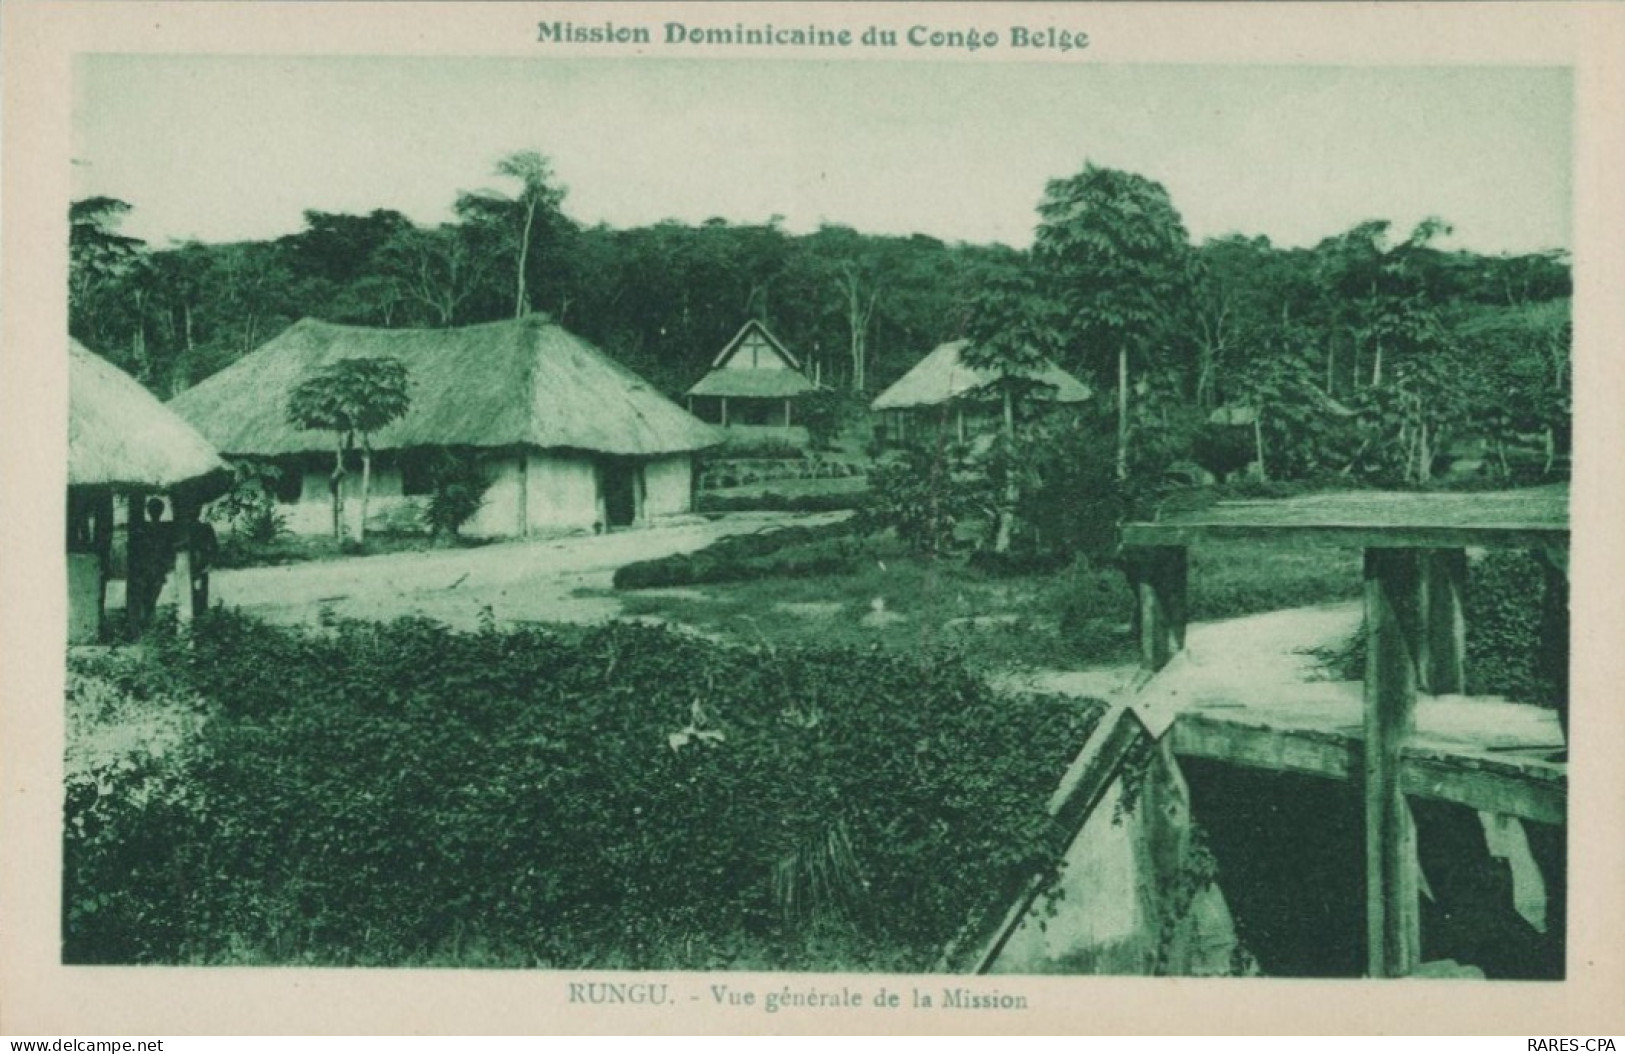 CONGO BELGE - La Mission De RUNGU - Les Missions DOMINICAINES - Série De CINQ Cartes Postales - Belgisch-Congo